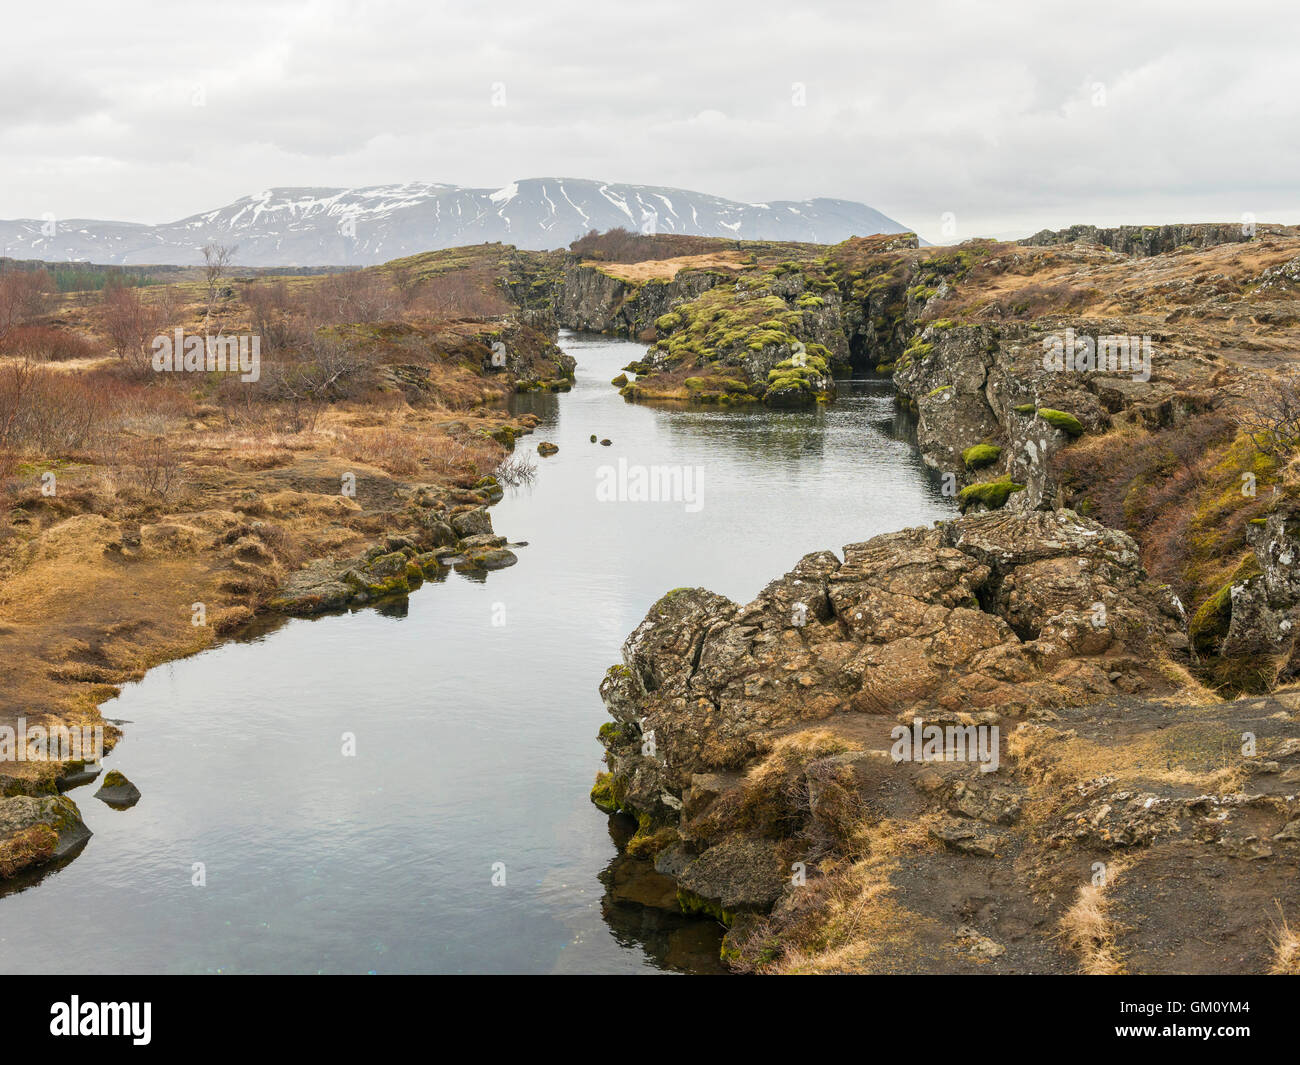 Flosagjá Canyon dans le parc national de Þingvellir Islande, est un crack ou défaut entre l'Amérique du Nord et d'Eurasion la plaque tectonique. Banque D'Images